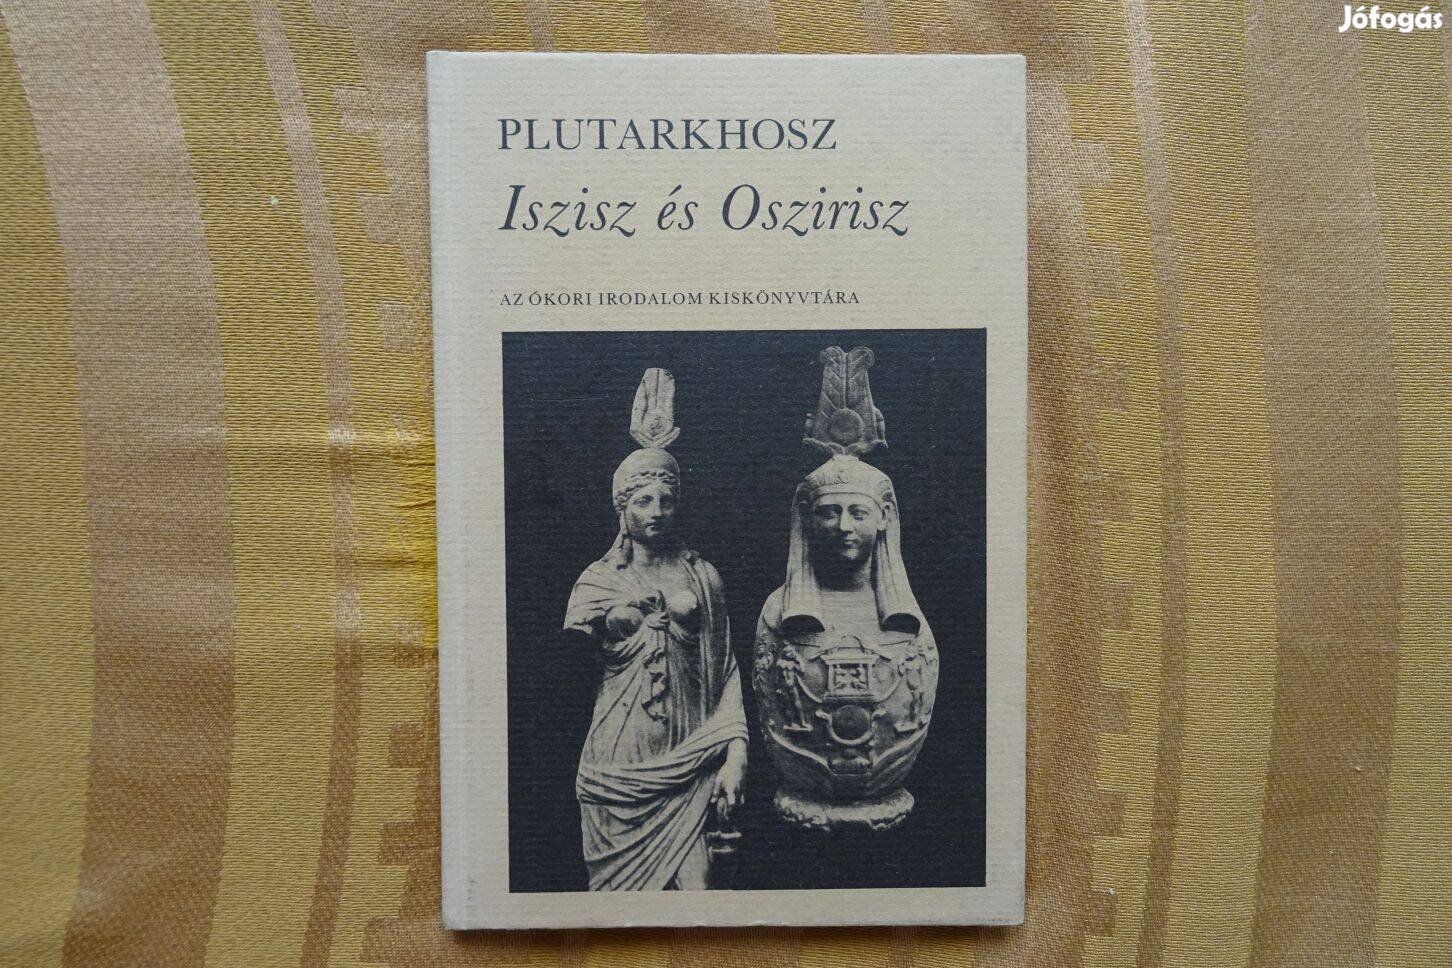 Plutarkhosz : Iszisz és Oszirisz / Ízisz és Ozirisz